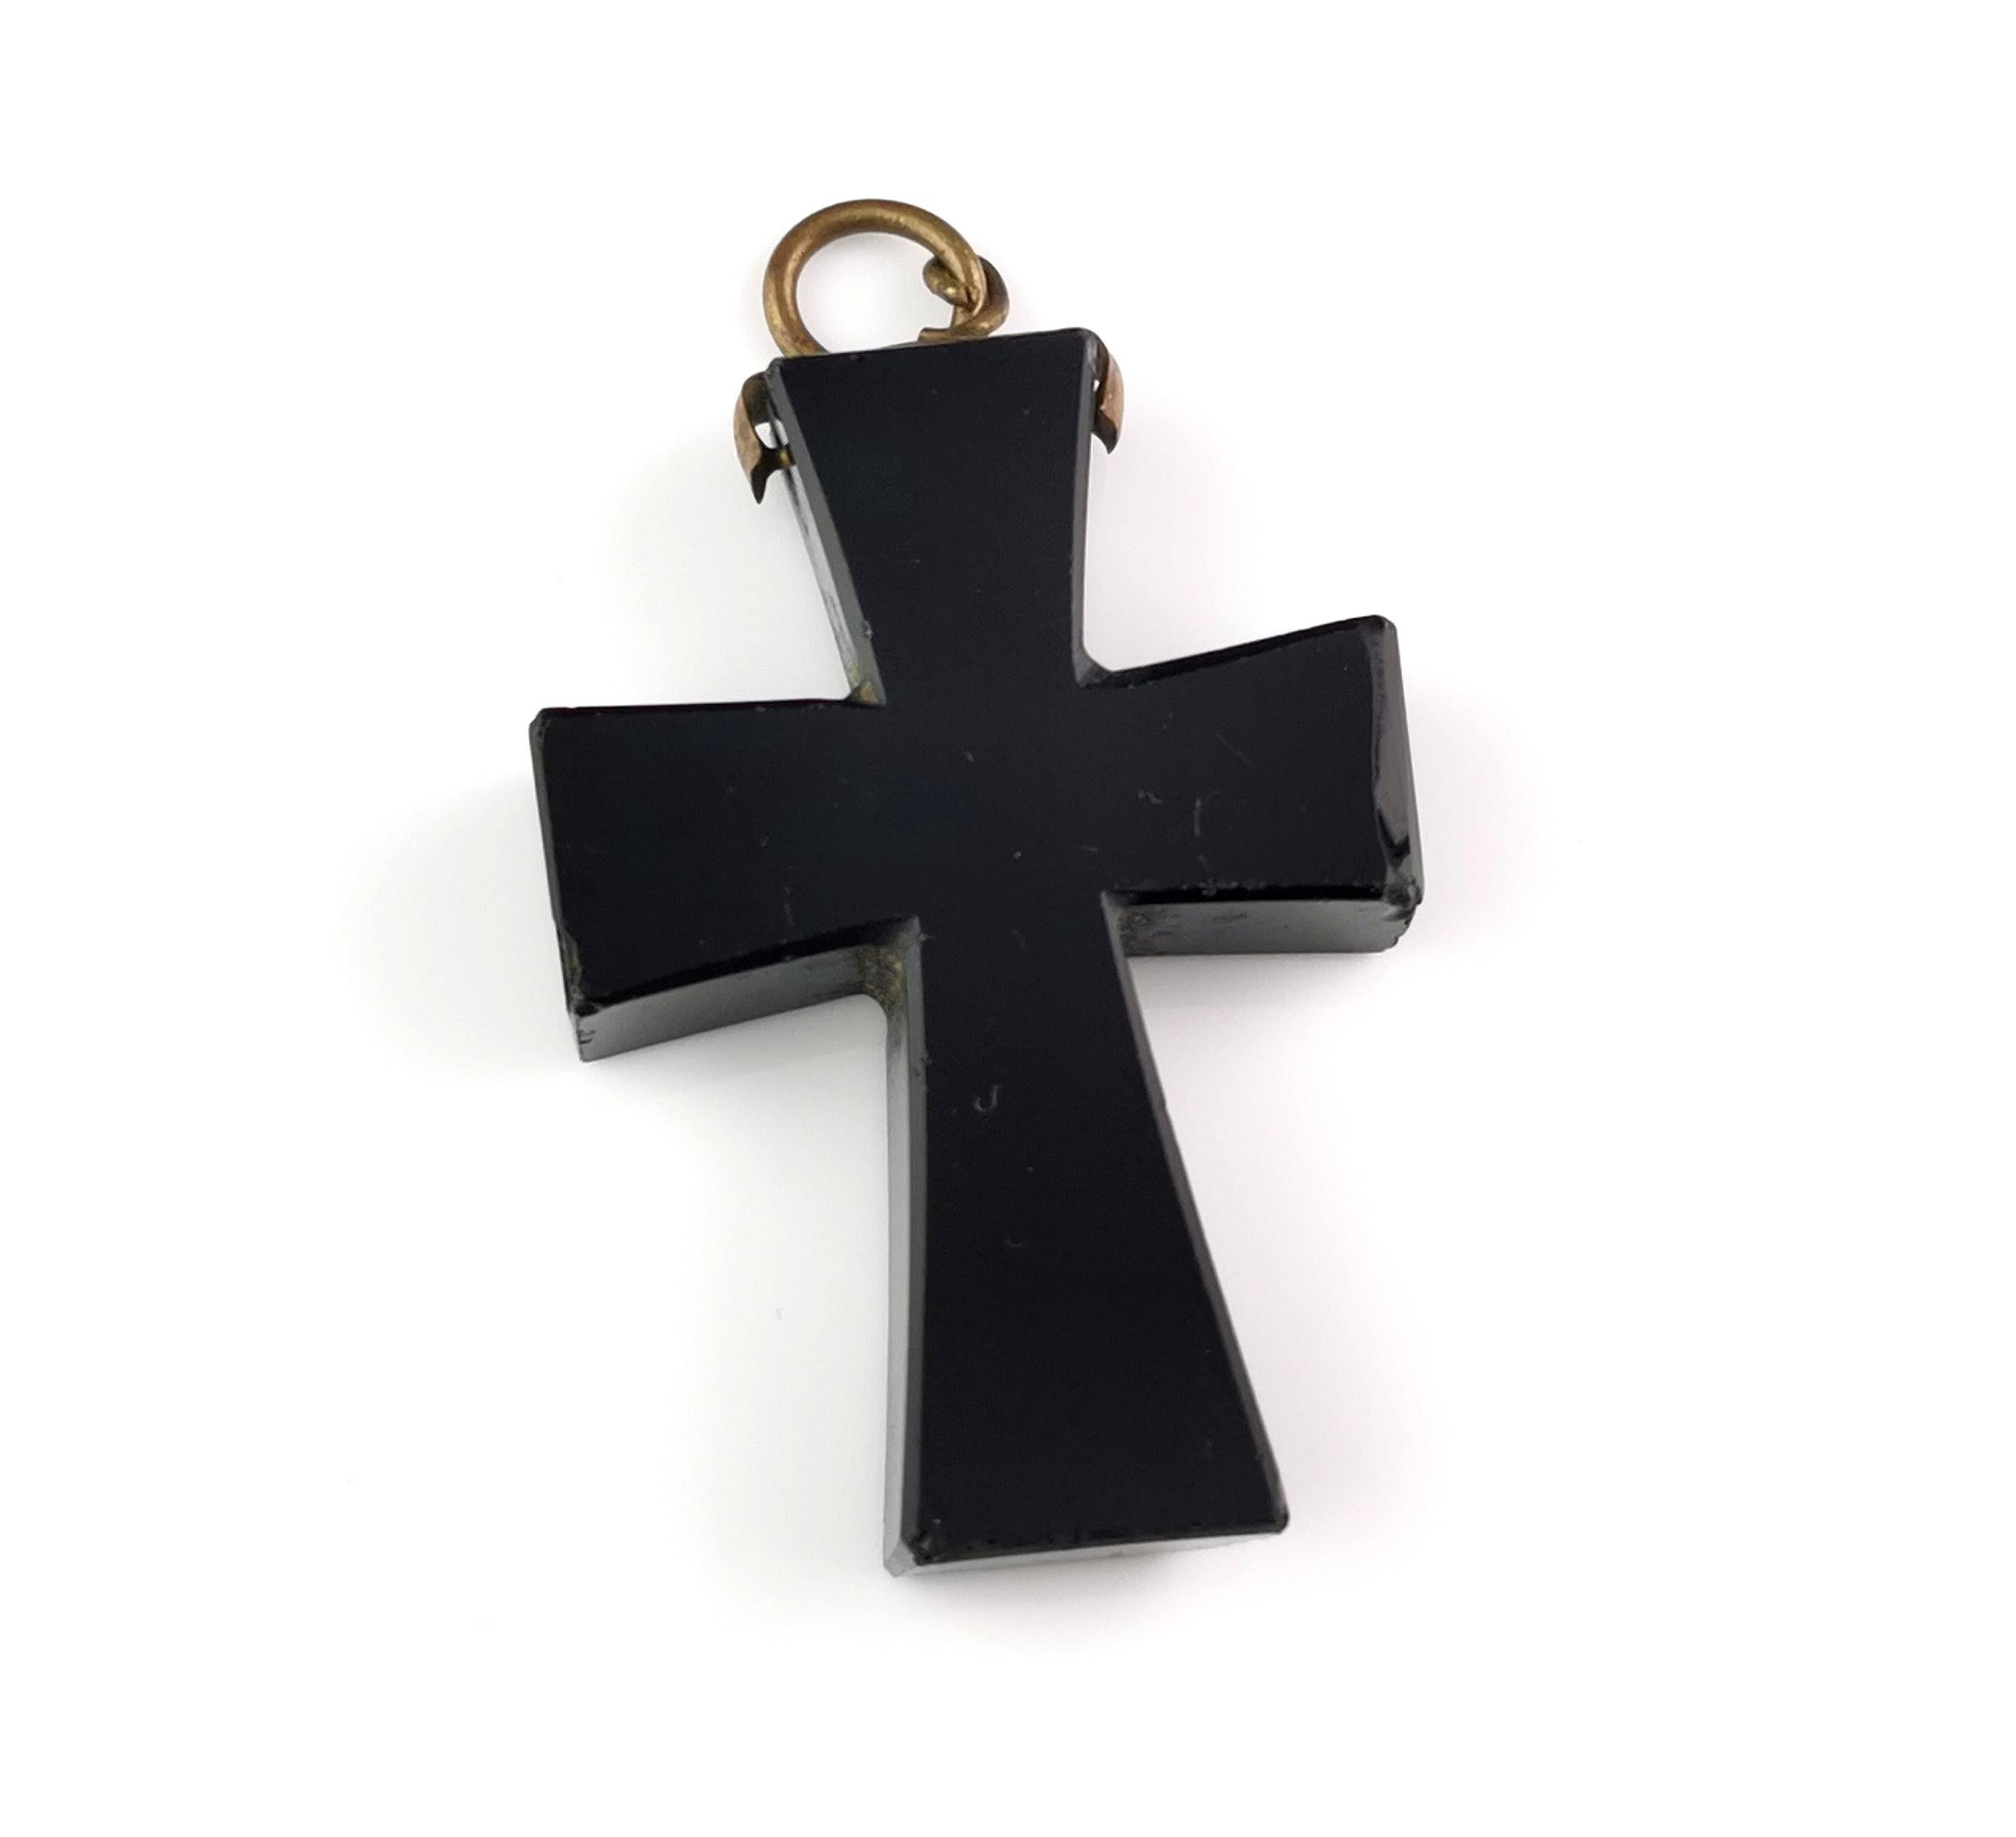 Un magnifique pendentif en forme de croix en jais de l'époque victorienne.

Il s'agit d'une croix façonnée en jais de Whitby et polie jusqu'à ce qu'elle soit très brillante.

Il est doté d'une balle pivotante en laiton sur le dessus et est